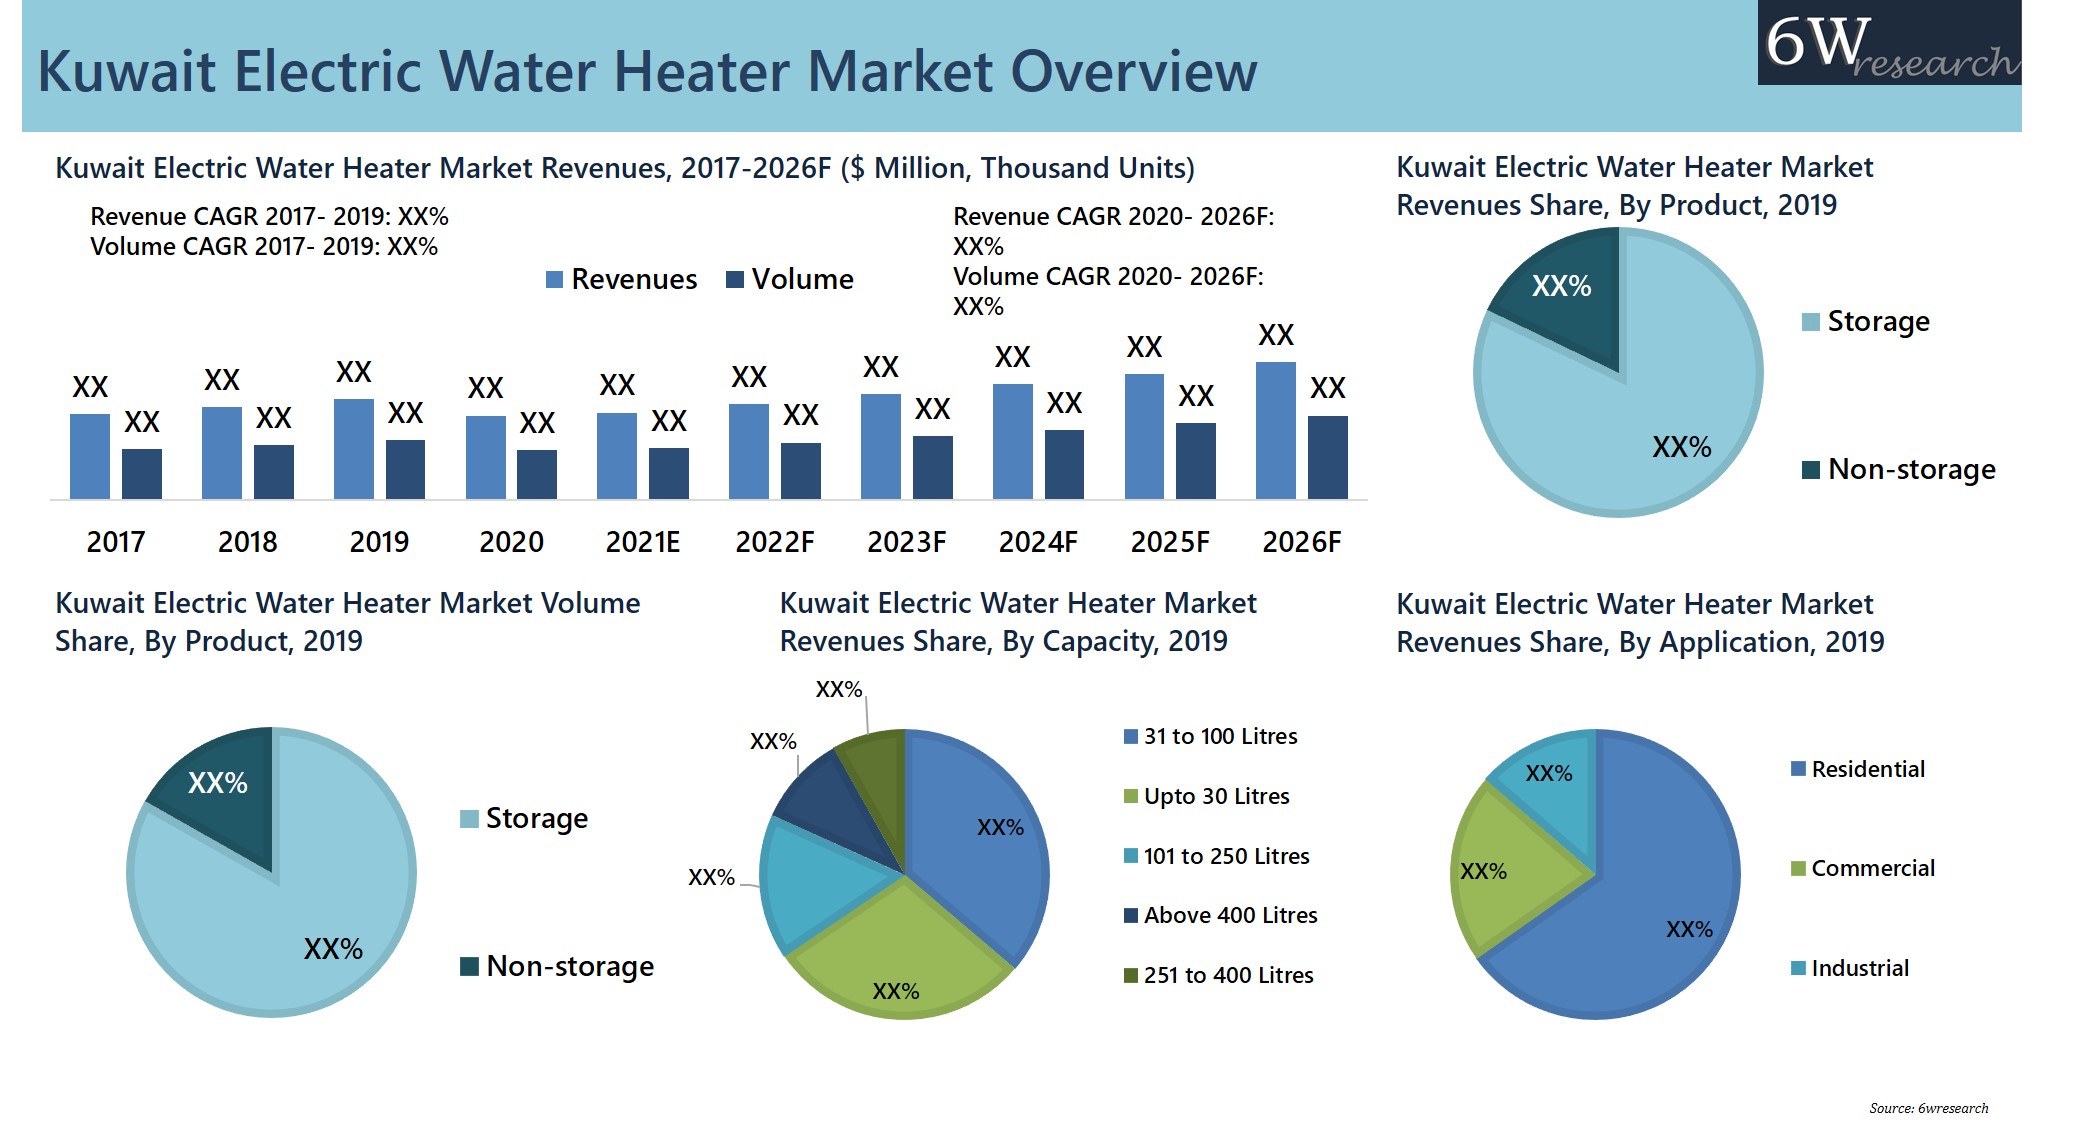 Kuwait Electric Water Heater Market